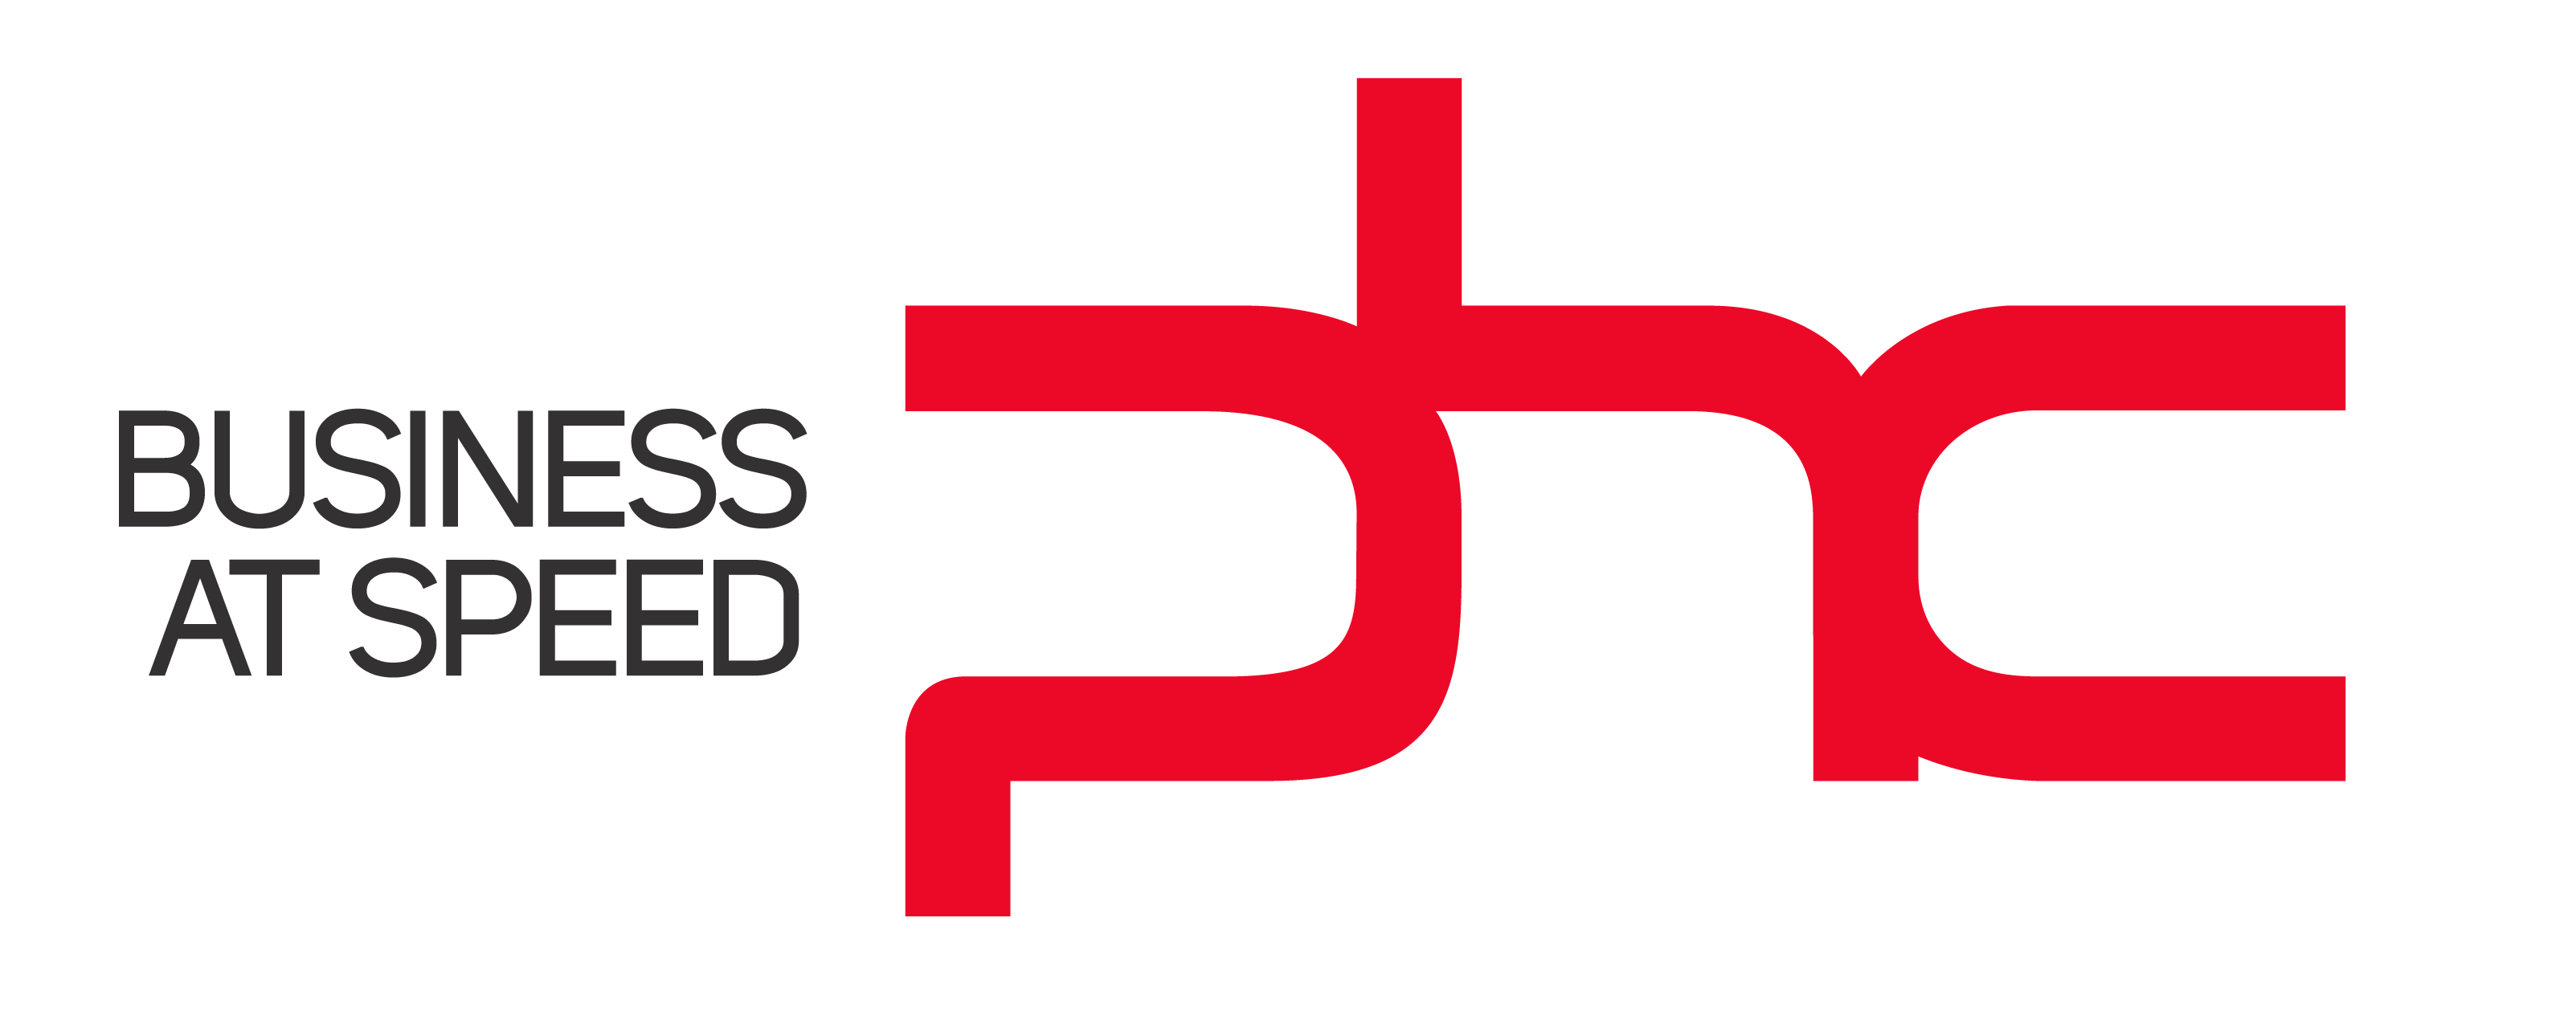 logo phc erp